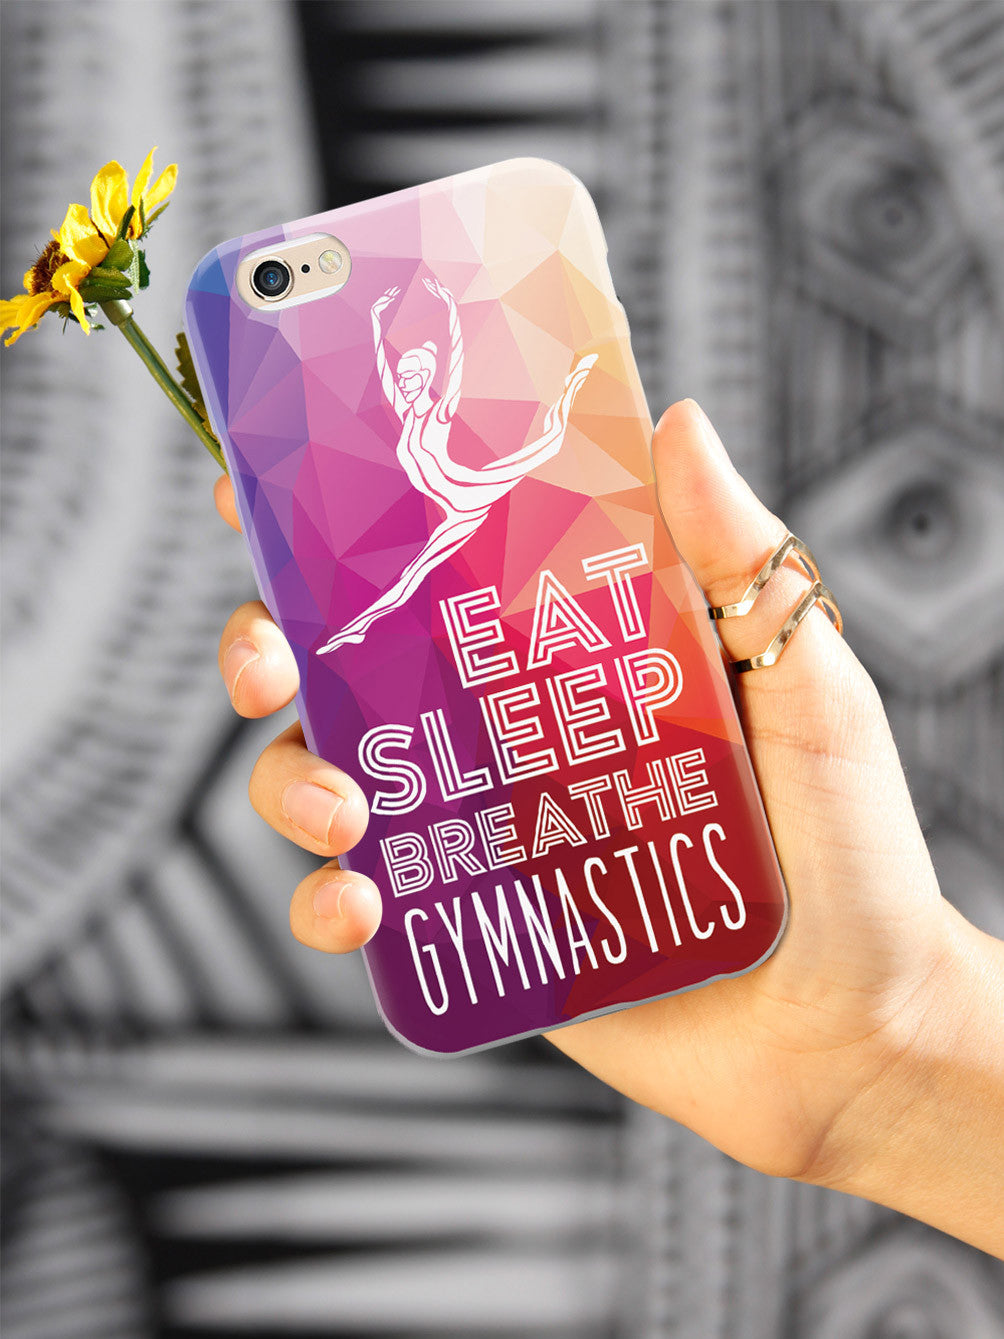 Eat Sleep Breathe Gymnastics Case